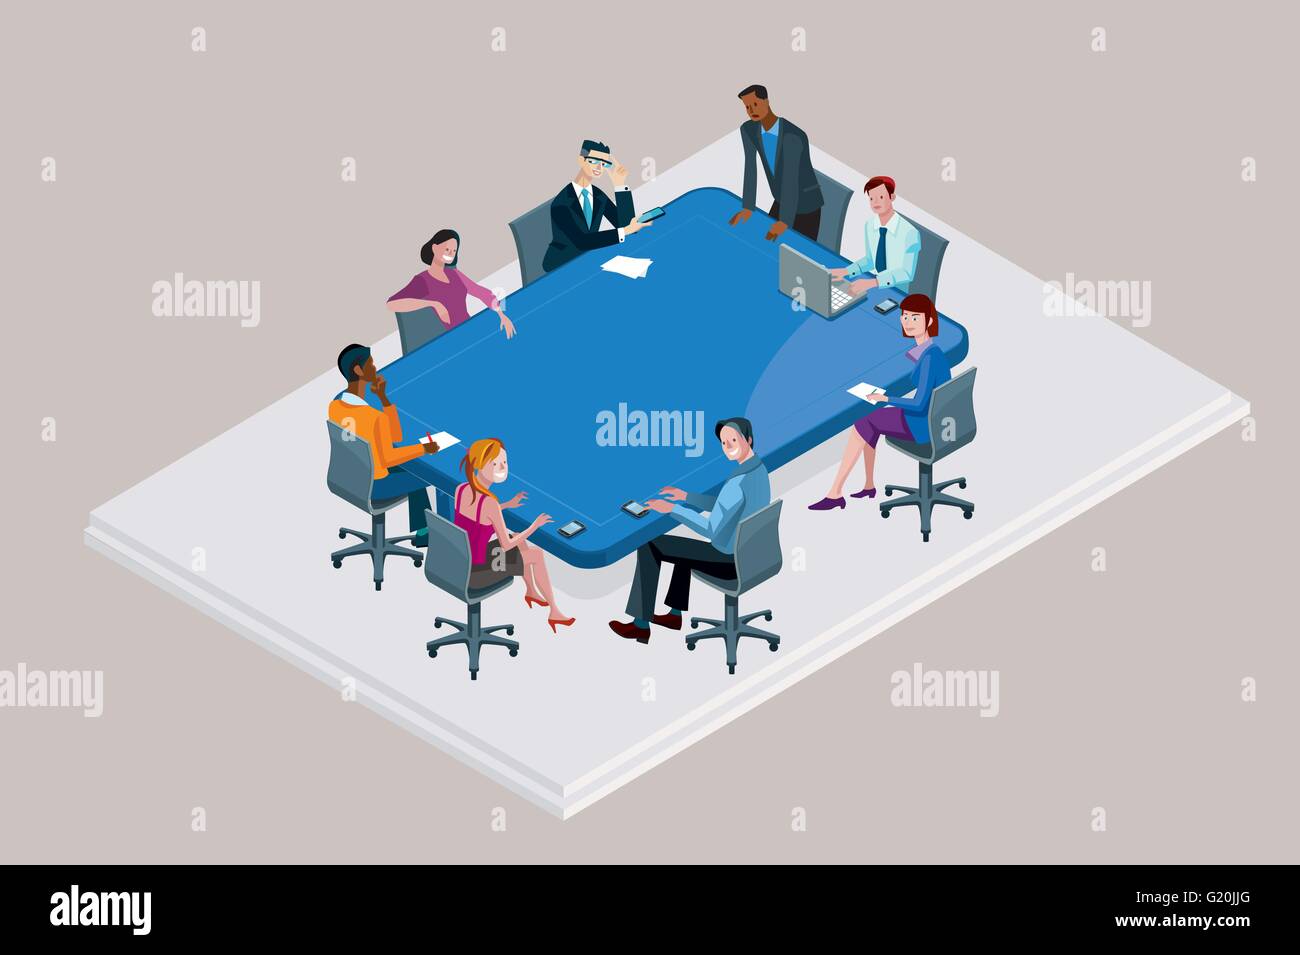 Kollegen an ein Büro treffen nahe einem großen blauen Konferenztisch. Stock Vektor